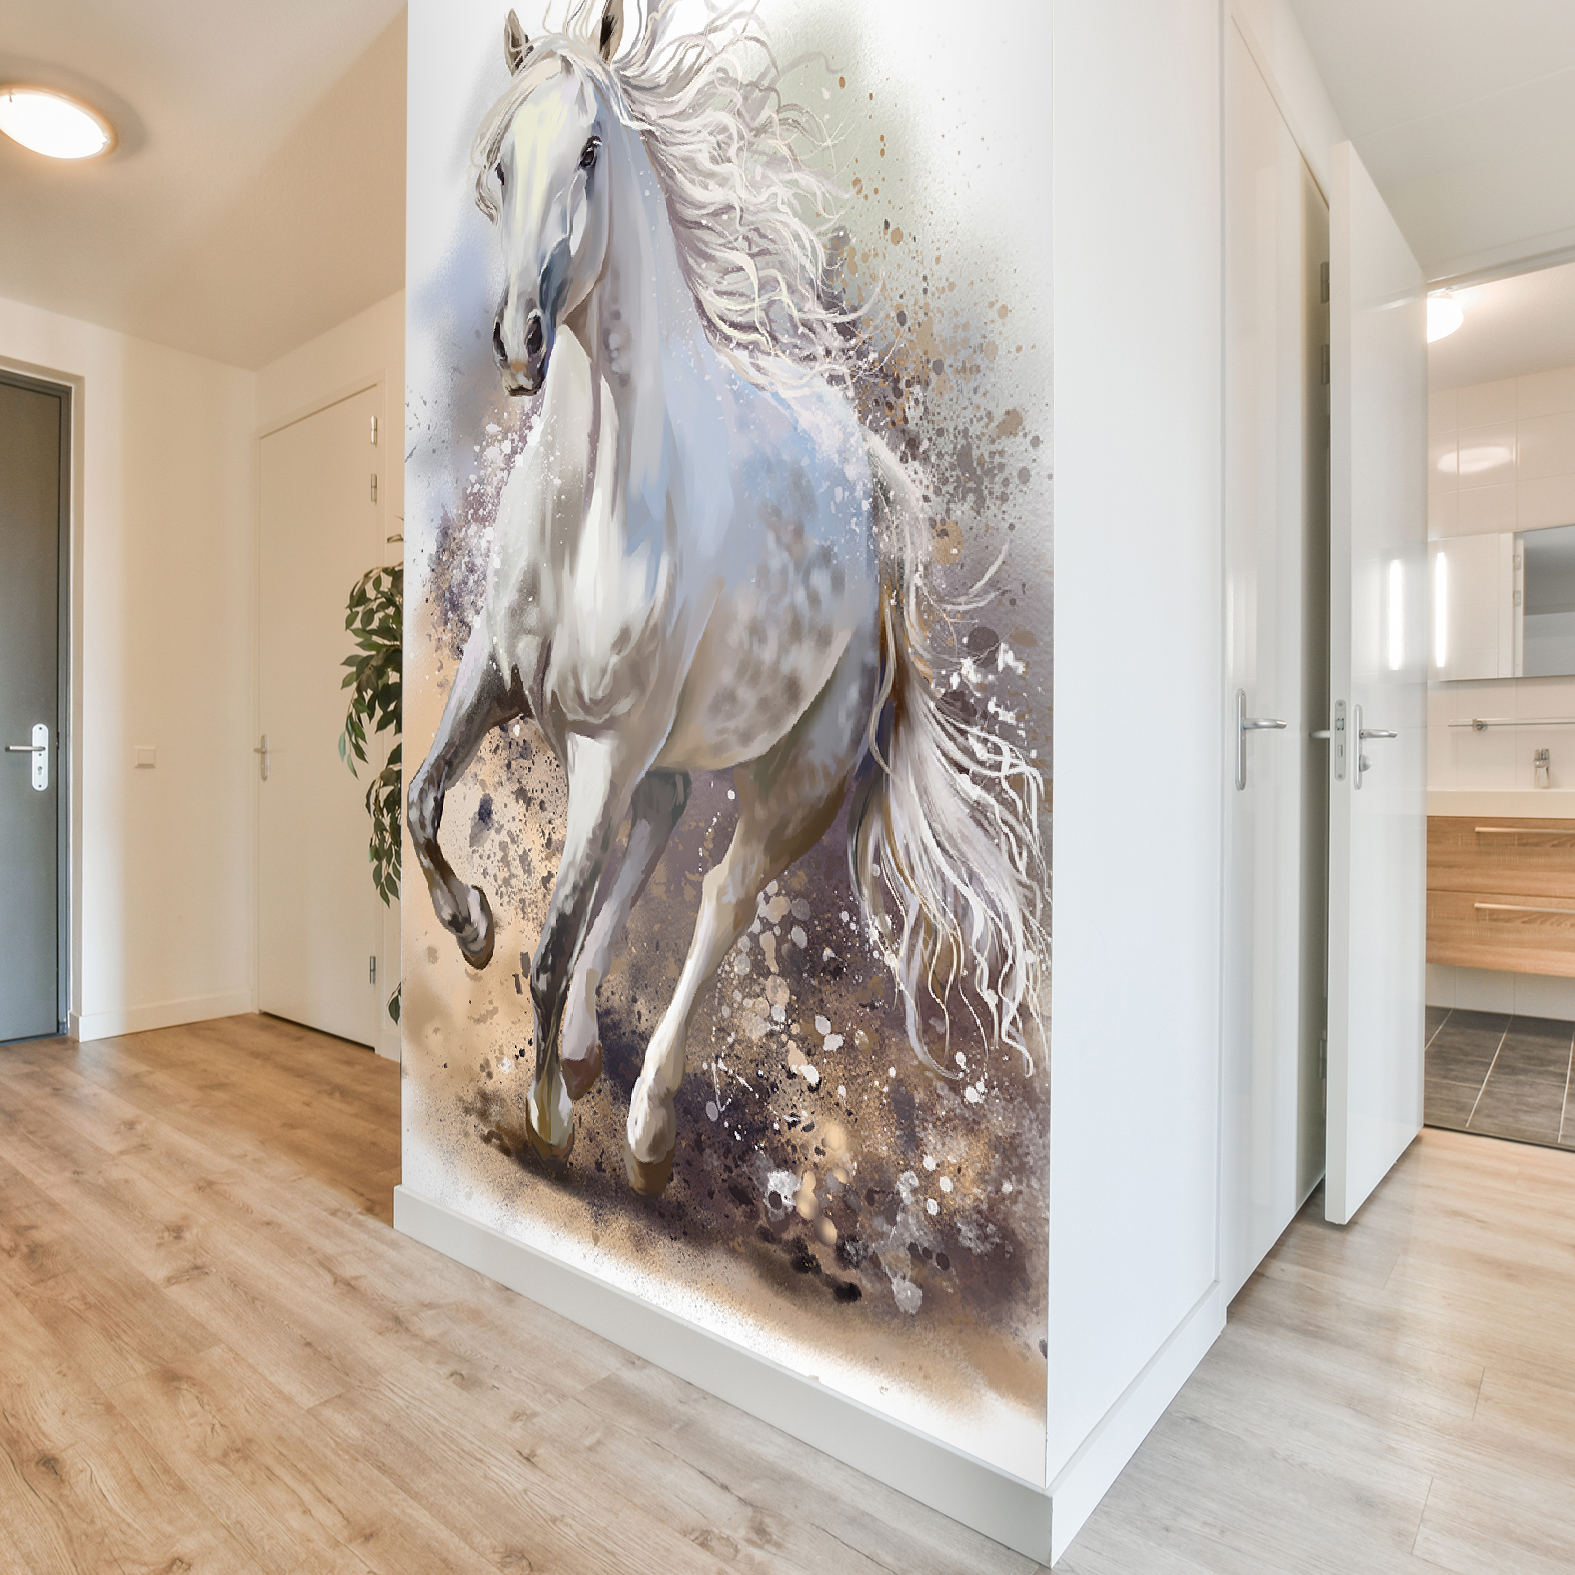 Фотообои Photostena Белая лошадь 1,52 x 2,5 м пазл castorland девушка и лошадь 500 элементов